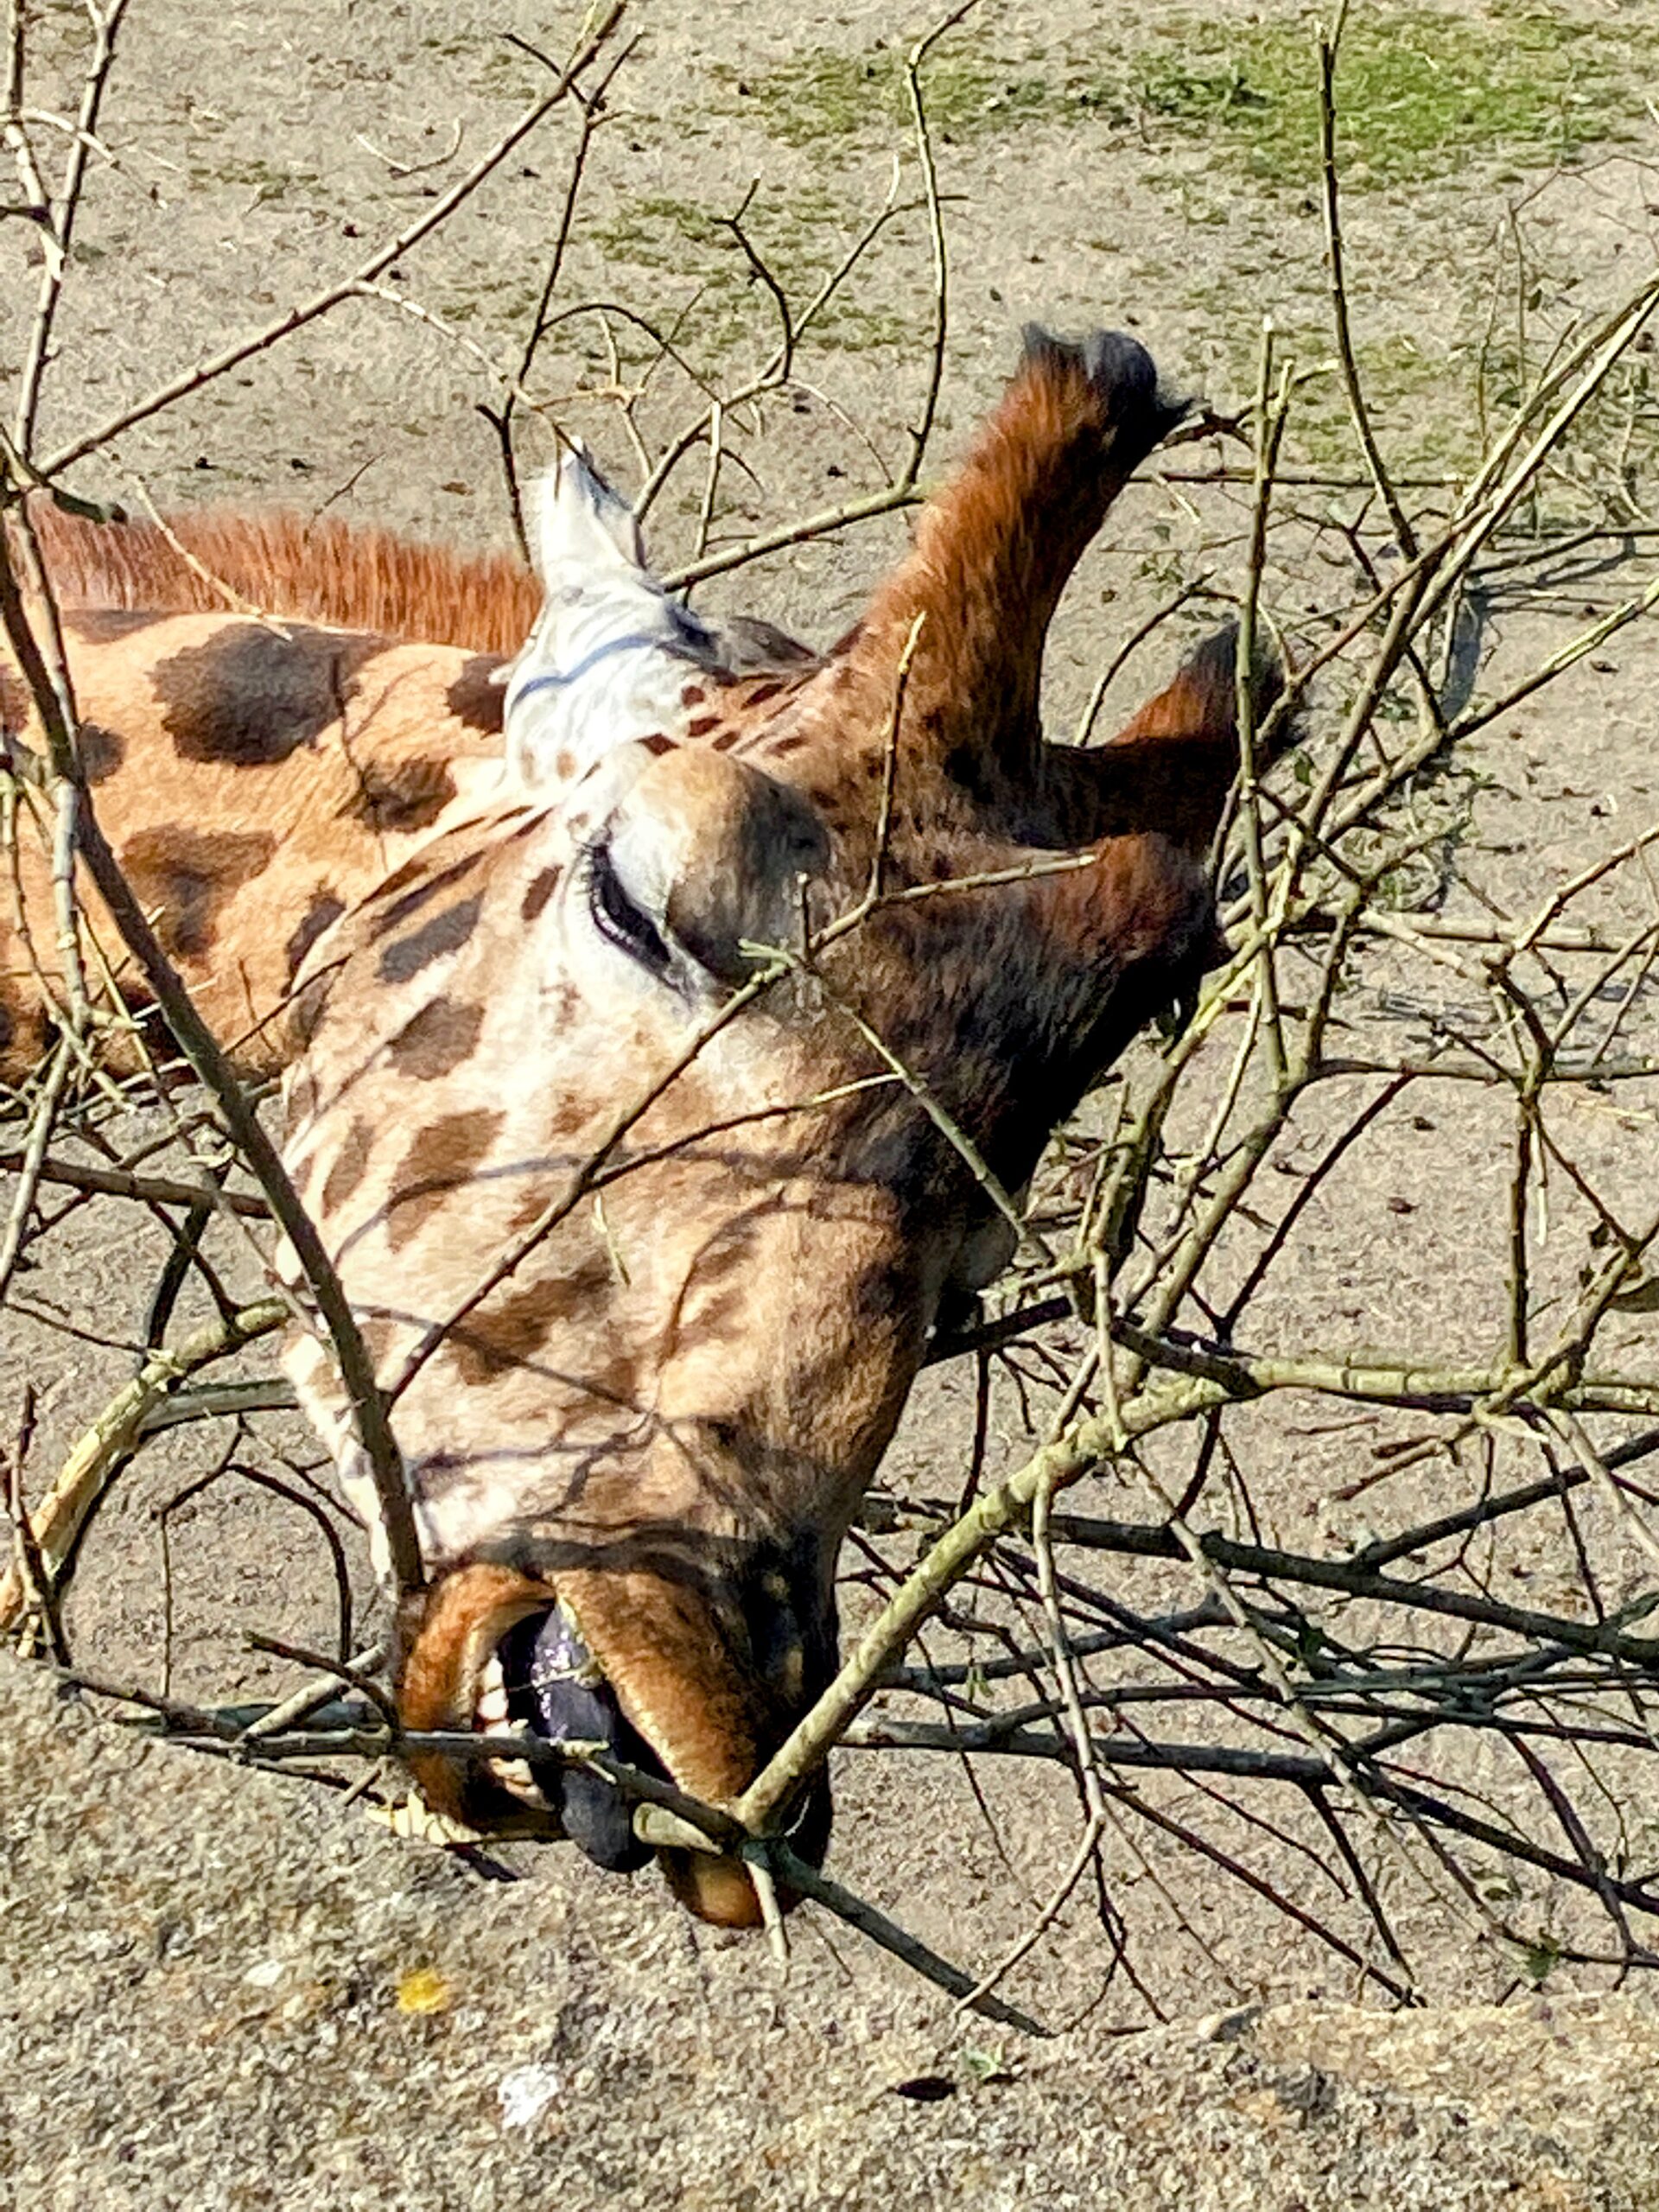 Giraffe at zoo